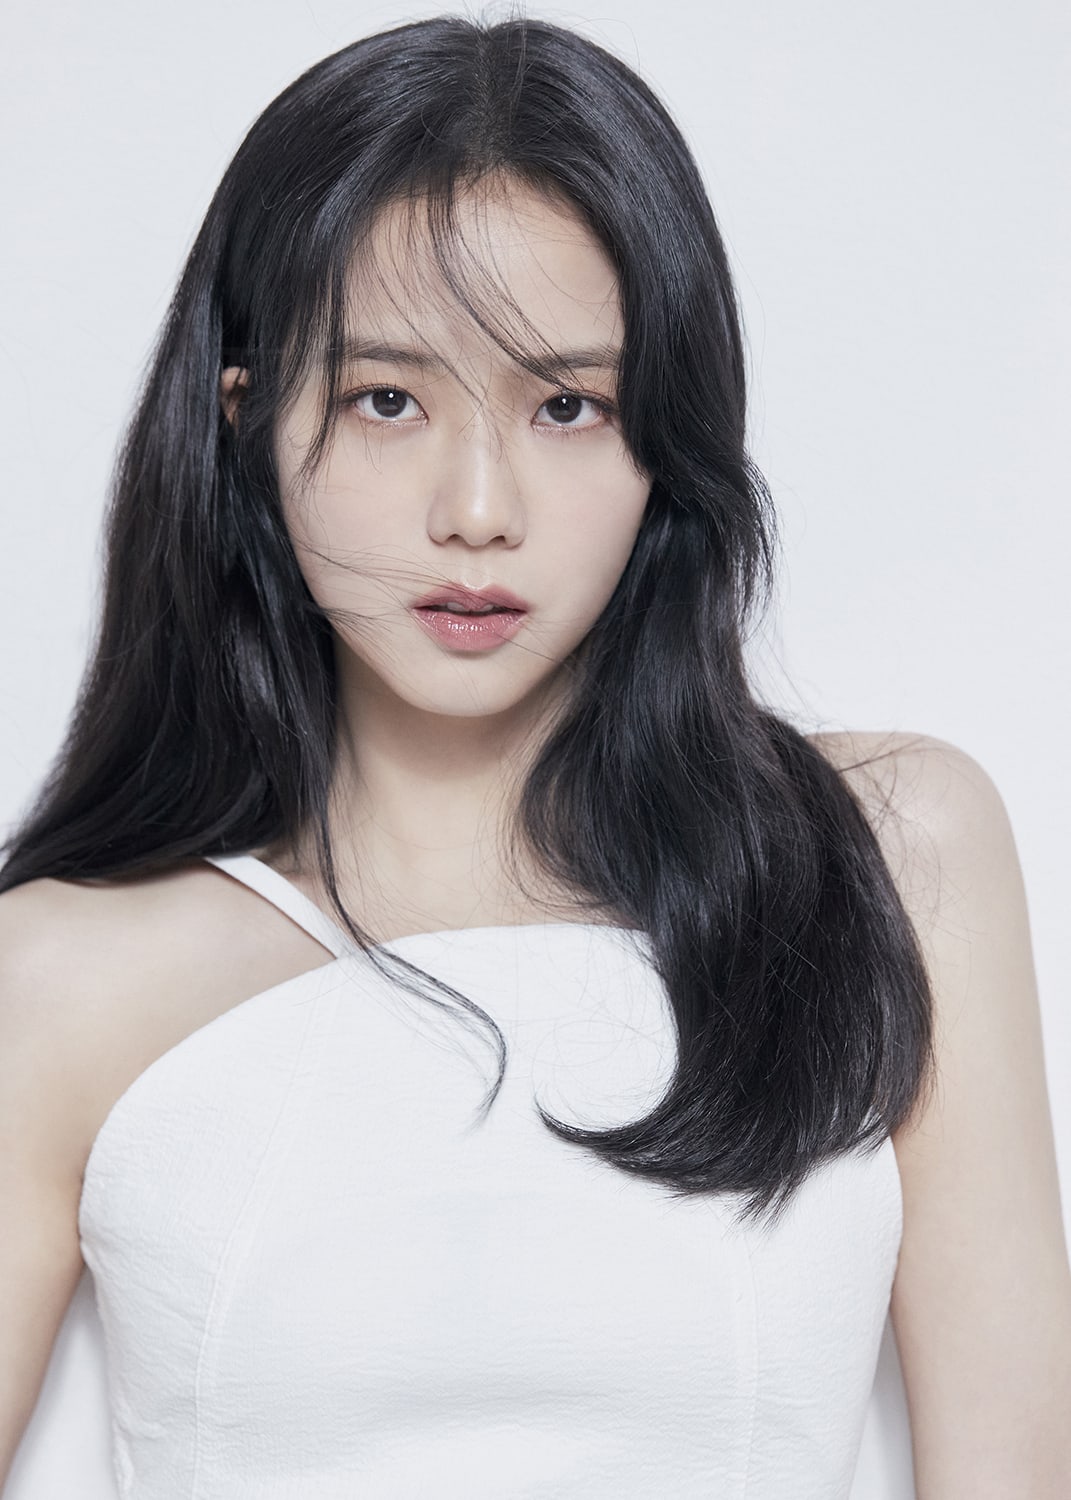 Jisoo Blackpink là gương mặt đại diện cho nét đẹp hiện đại của phụ nữ Hàn Quốc. Hãy chiêm ngưỡng bộ ảnh mới nhất của cô ấy và phát hiện những cách thể hiện quyến rũ đầy tinh tế và sáng tạo trong từng khung hình.